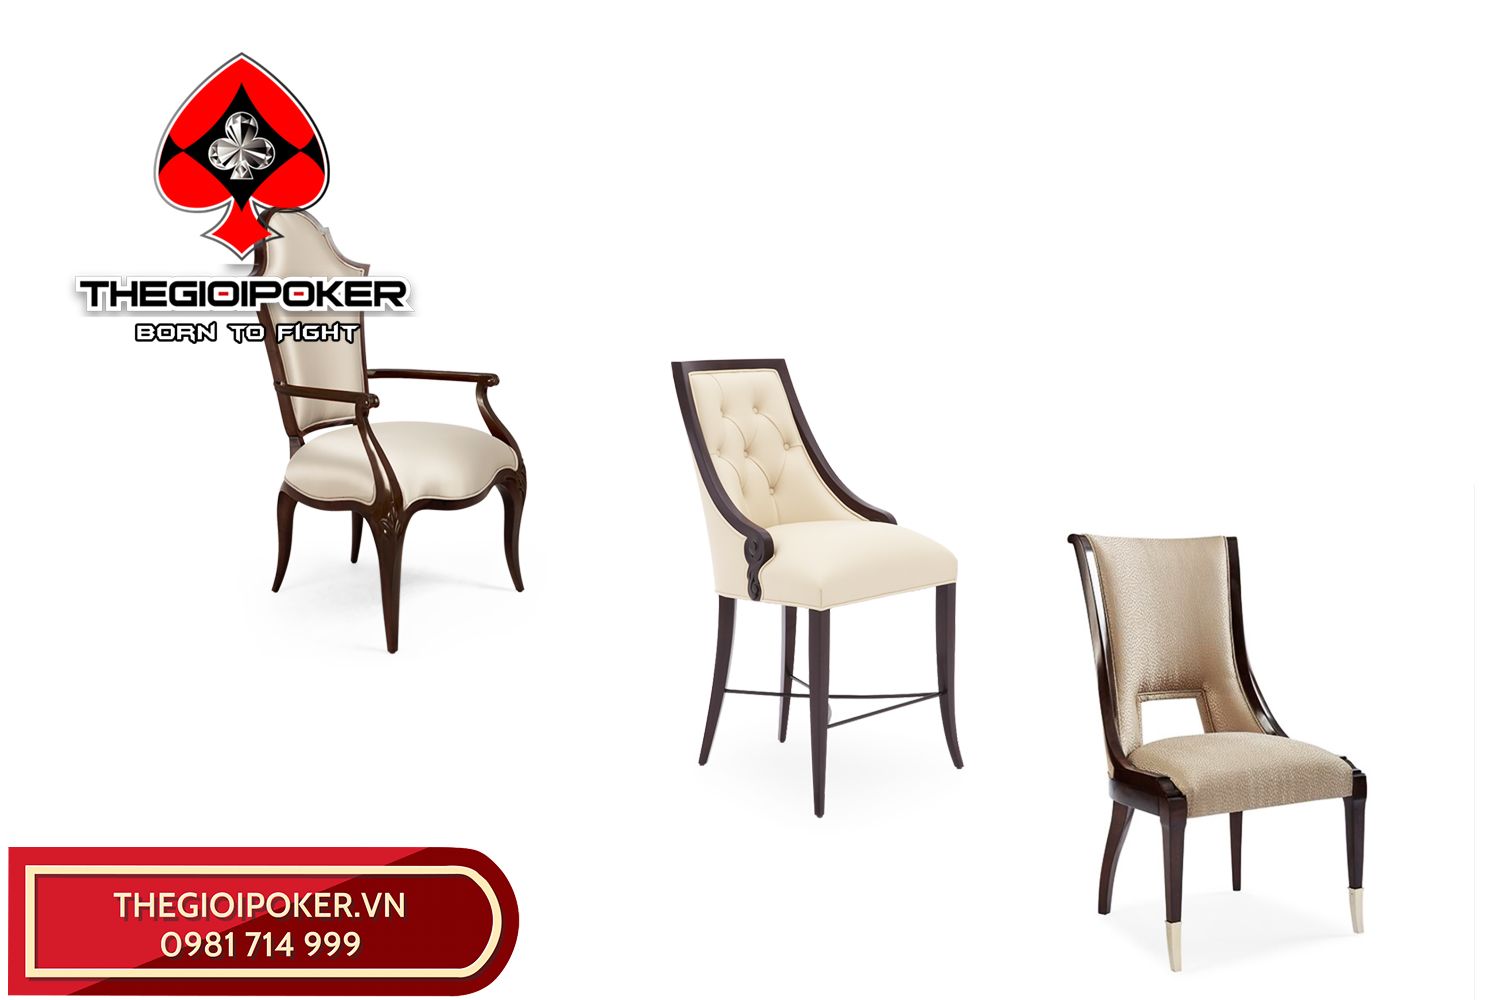 Beberapa model kursi populer untuk meja poker